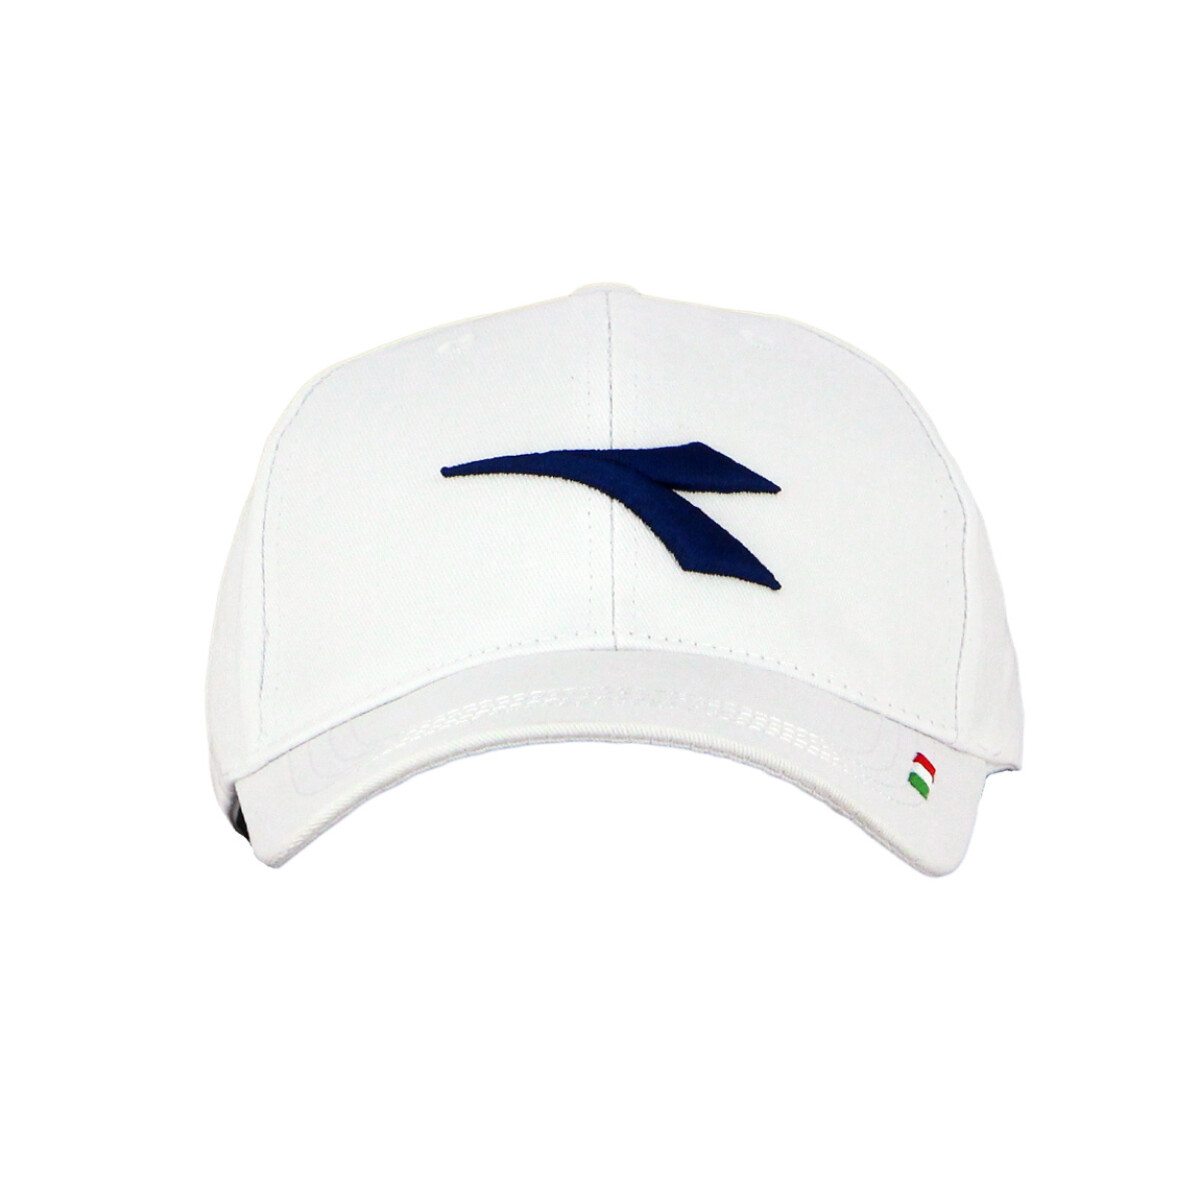 Diadora Cap One Logo / Wht-navy - Blanco-marino 